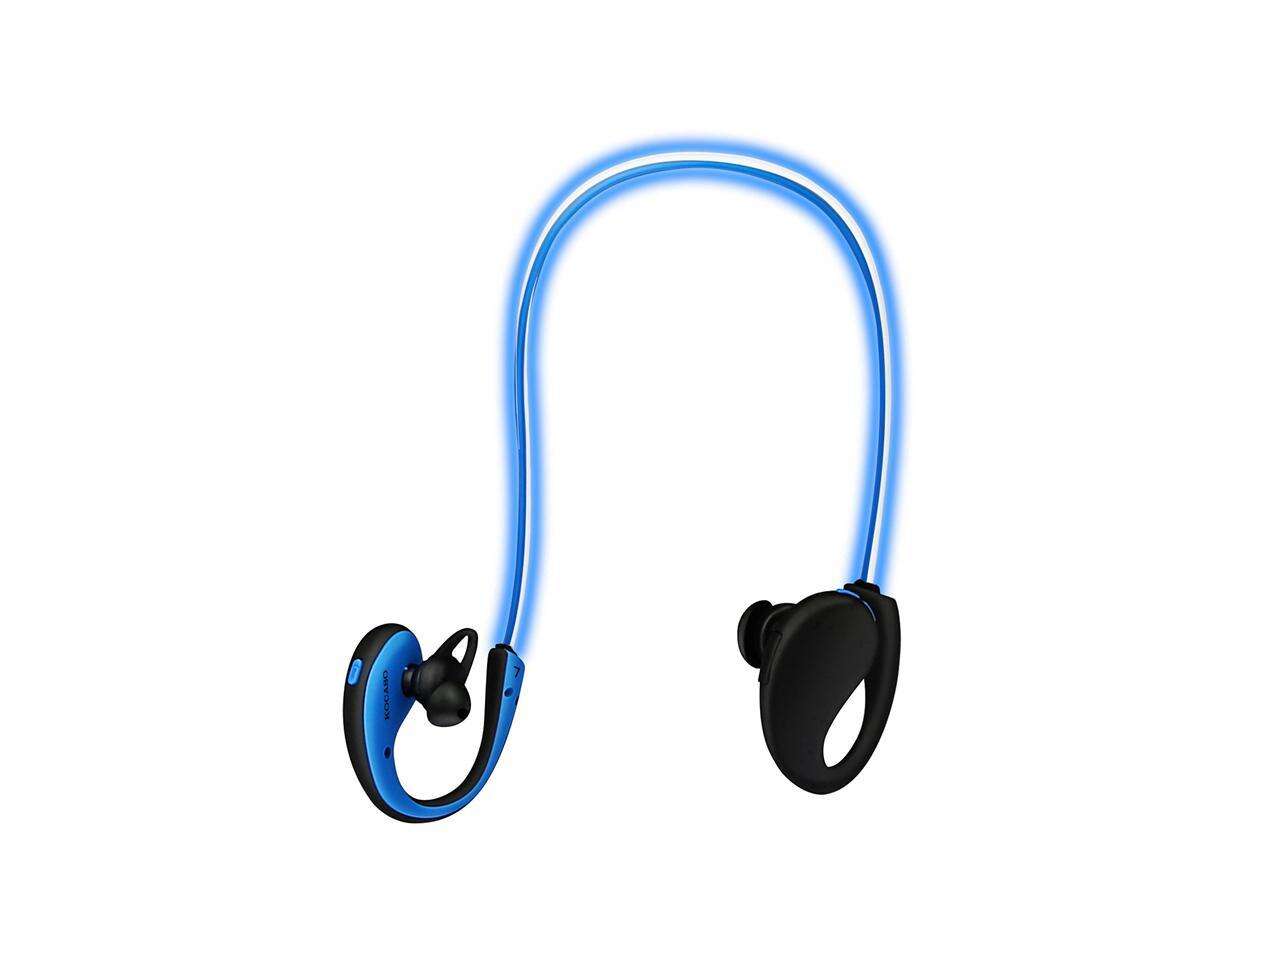 KOCASO Sports Wireless Headphone V4.1 Neckband Earphones LED Light 6-Hrs Playtime w/Mic for Running